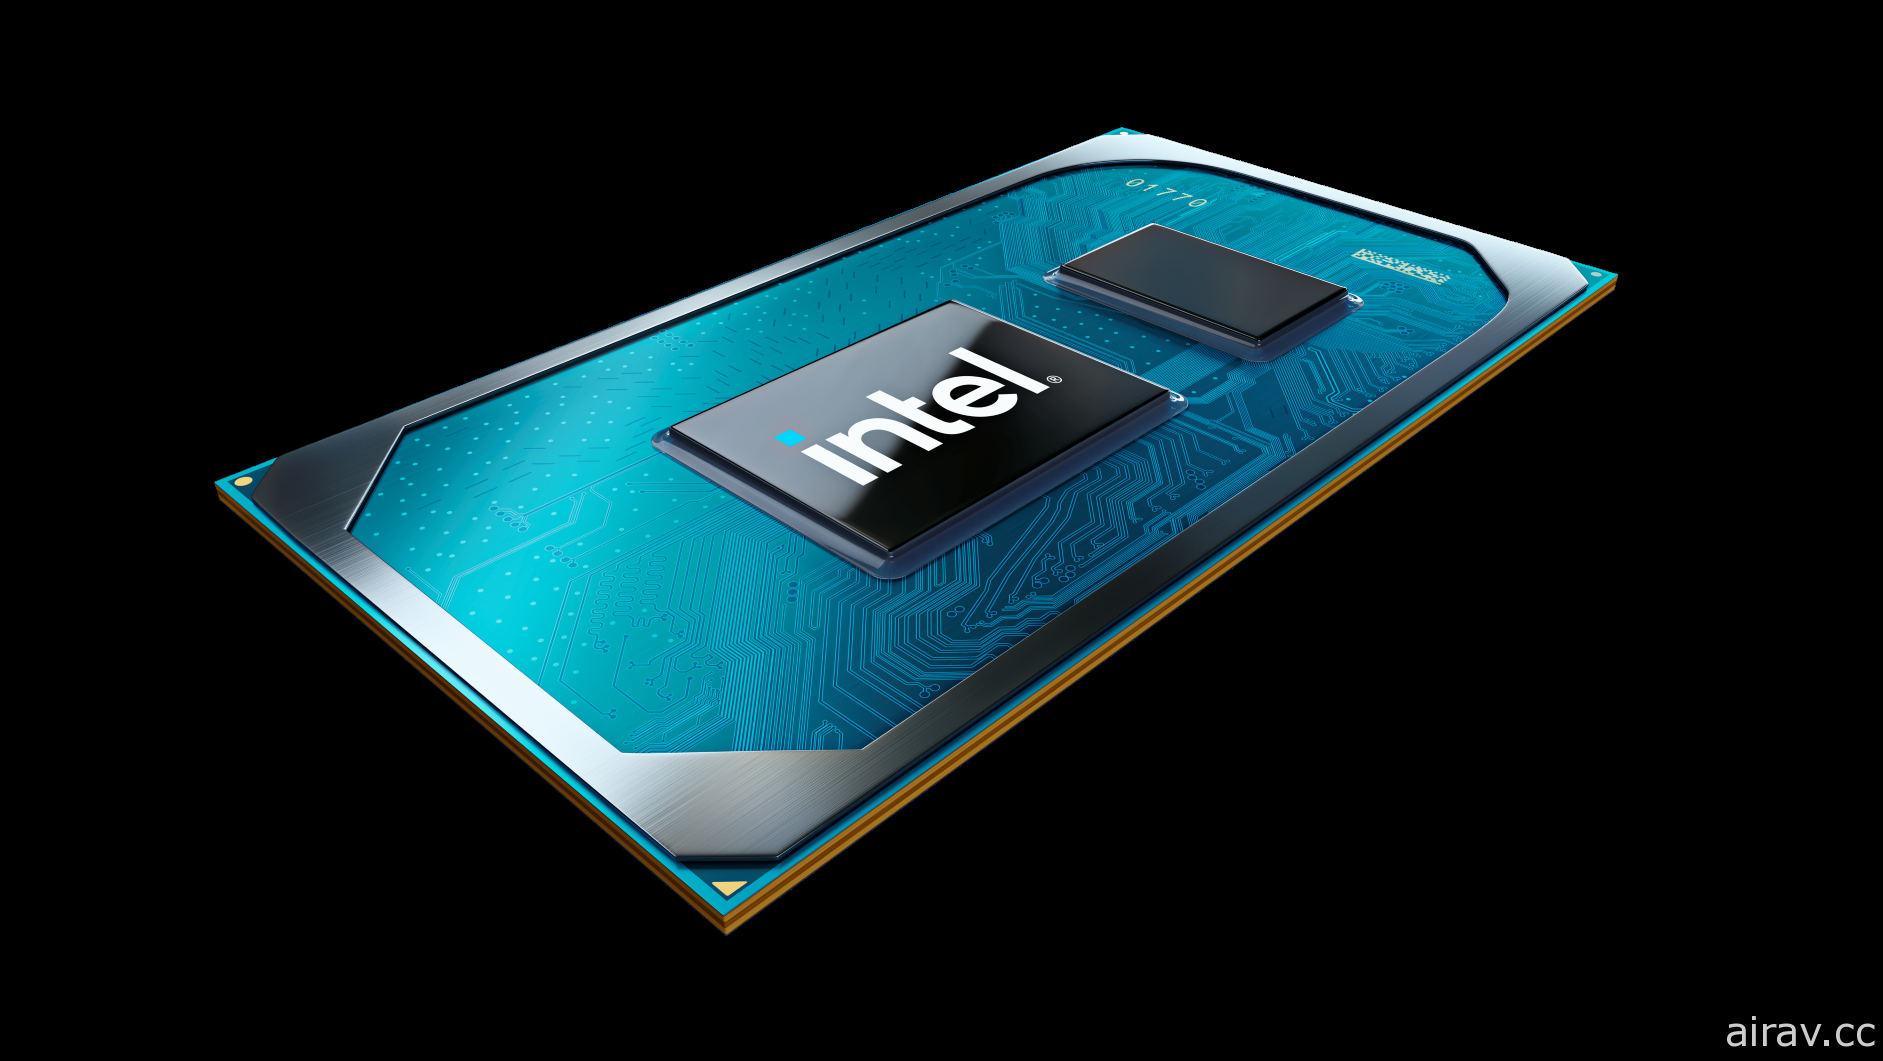 英特尔公开最新笔电处理器 Tiger Lake 与 Intel Evo 平台品牌